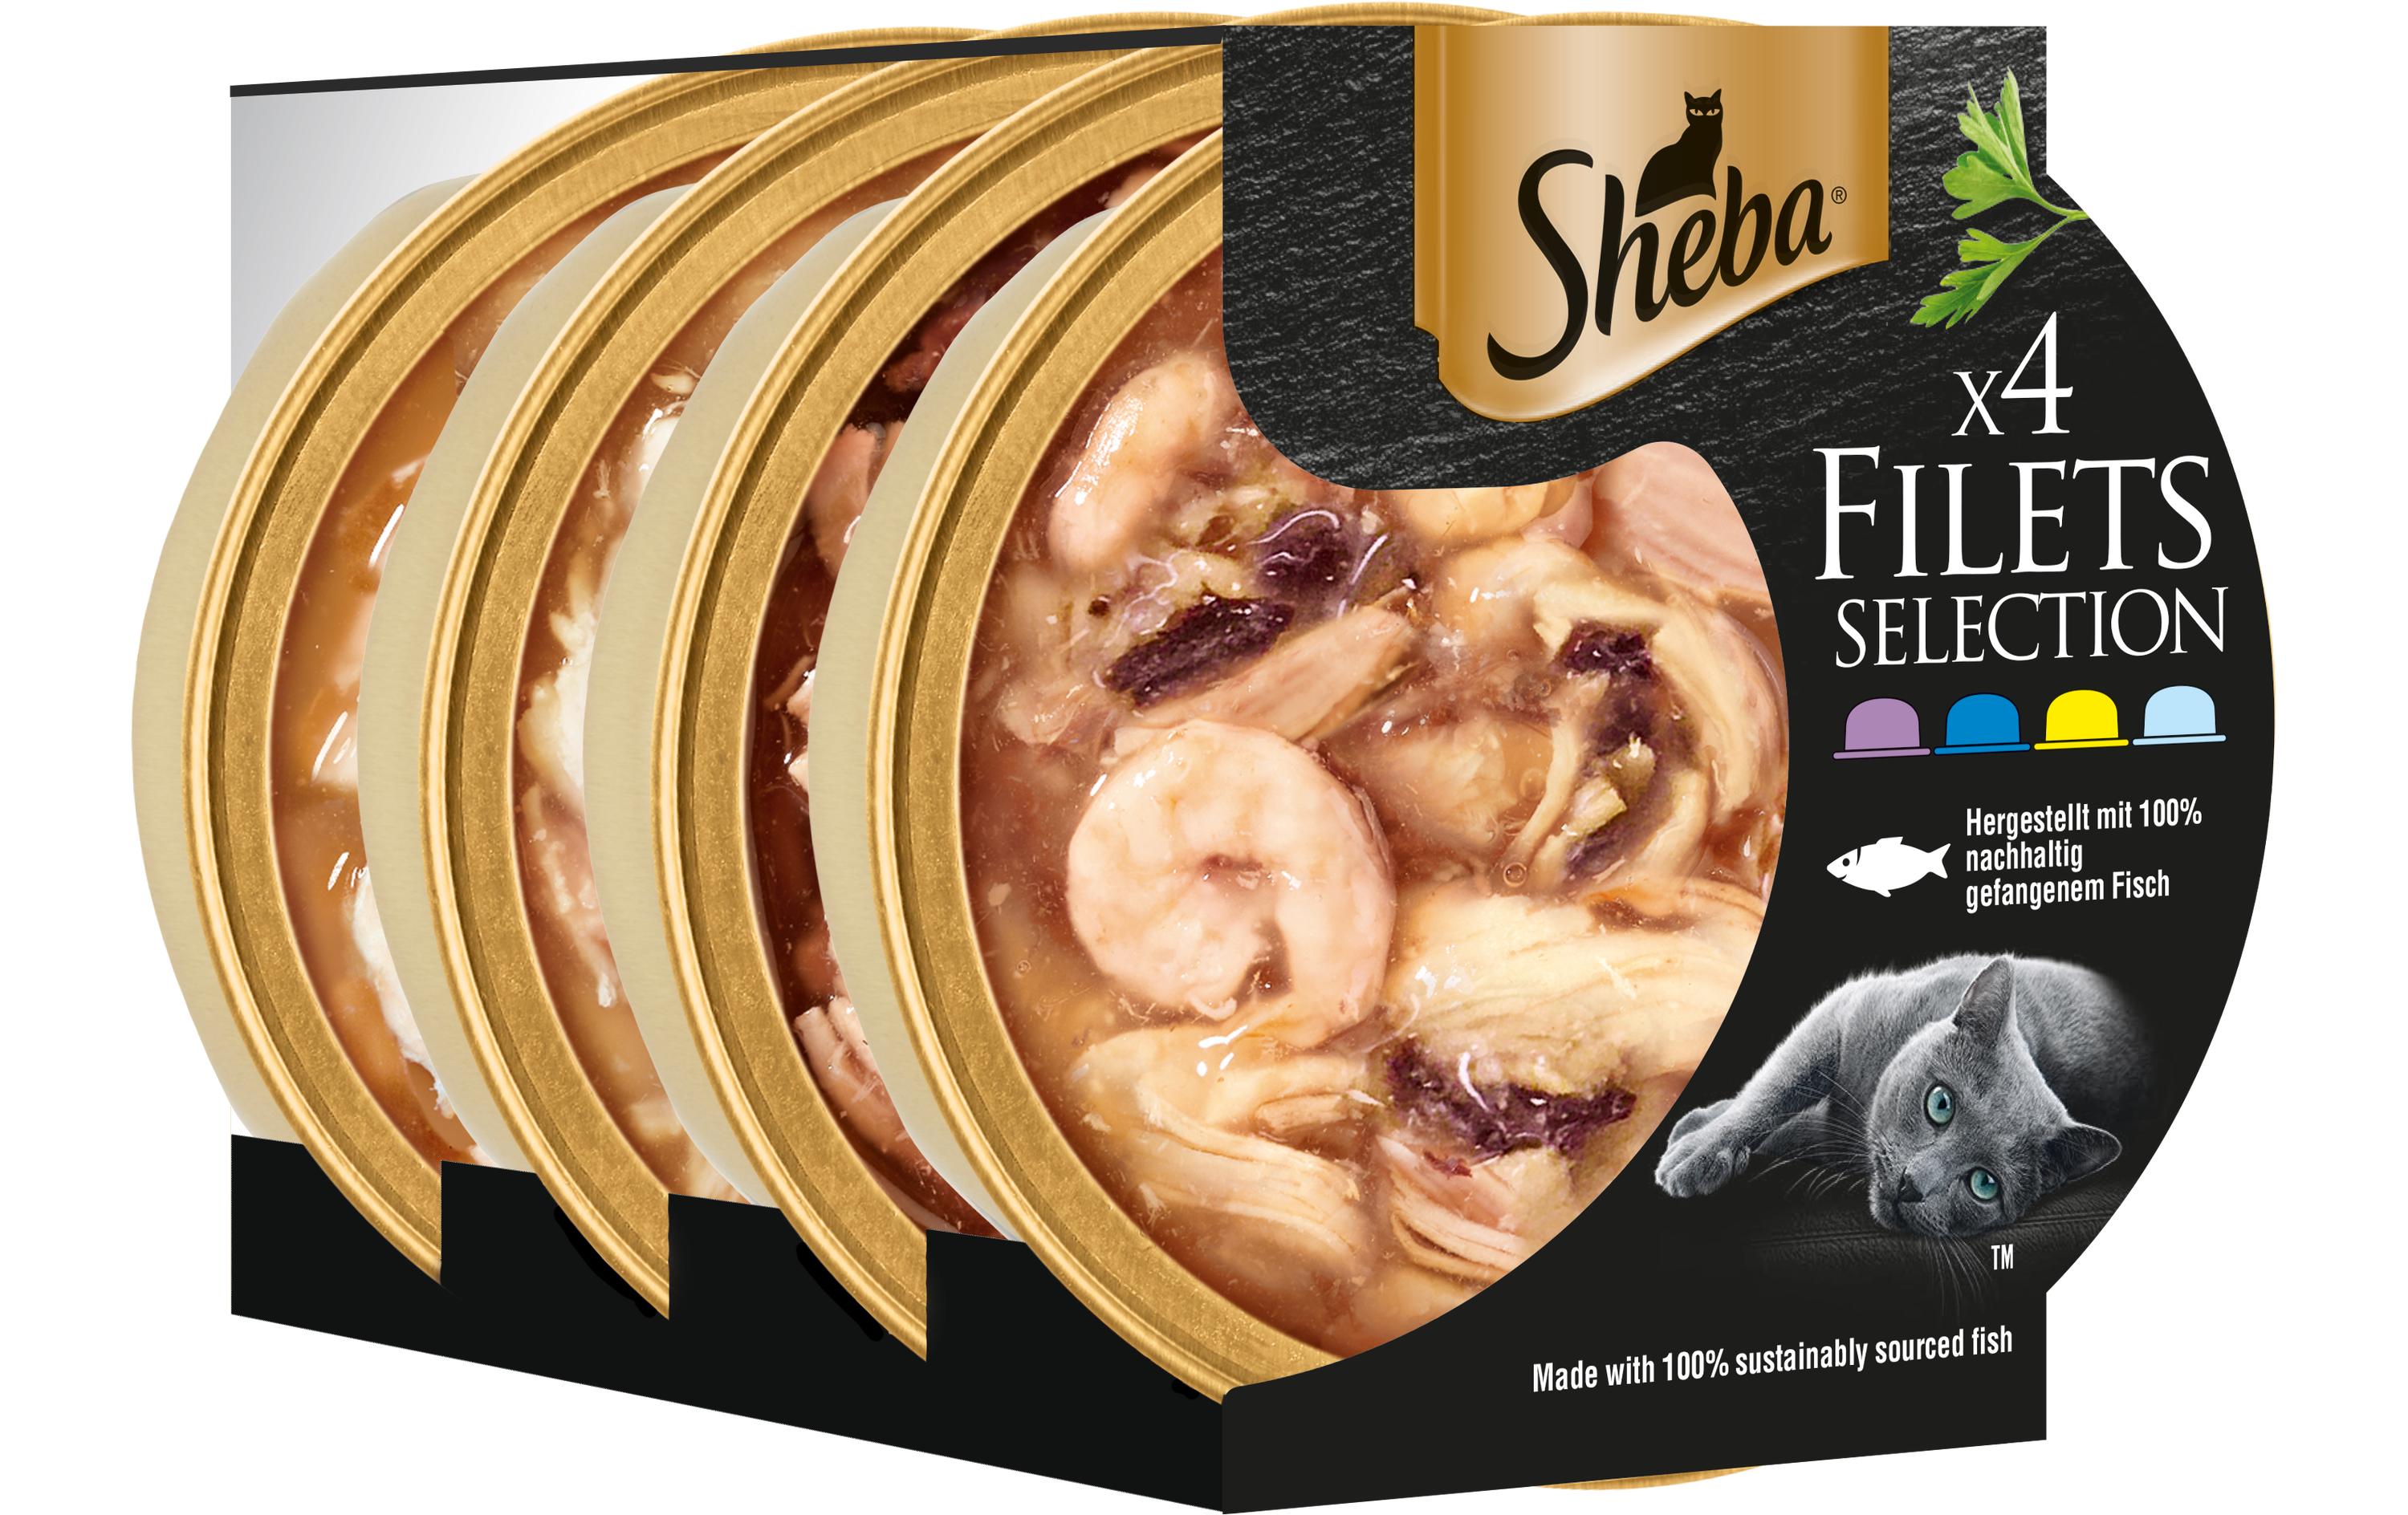 Sheba Katzen-Snack Filets Selection, 4 x 60 g